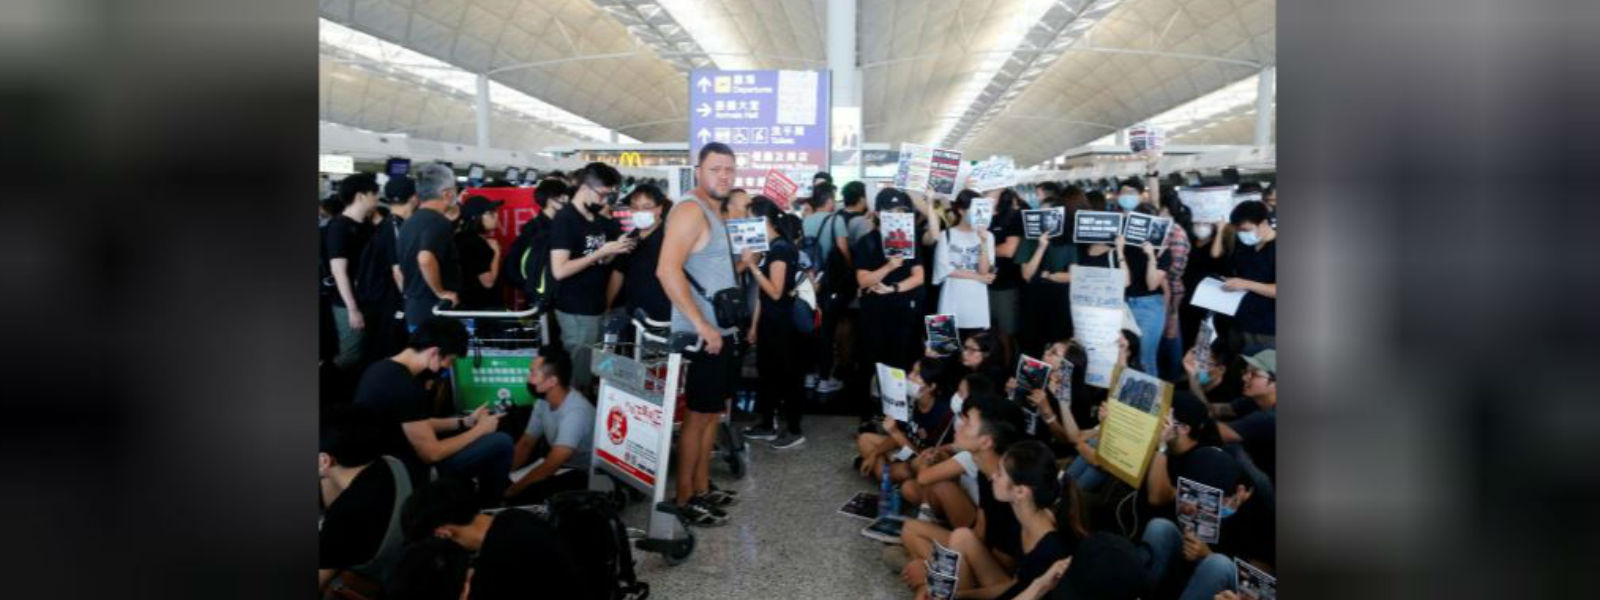 Hong Kong protests: Airport cancels flights